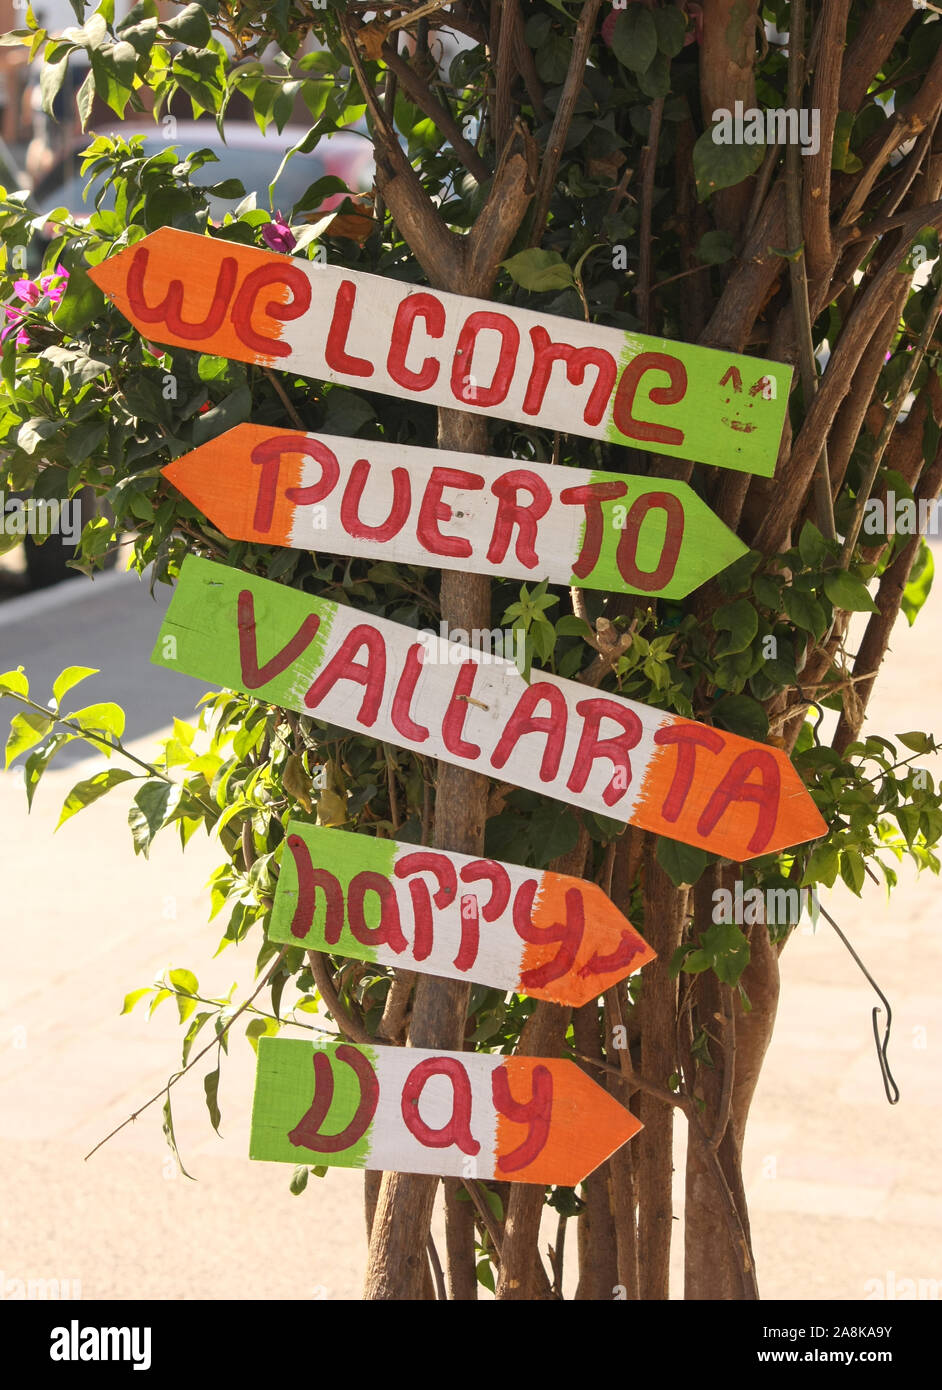 Patriotisches farbenfrohes Schild, das Besucher in der Innenstadt von Puerto Vallarta willkommen heißt und alle zu einem glücklichen Tag auffordert. Stockfoto